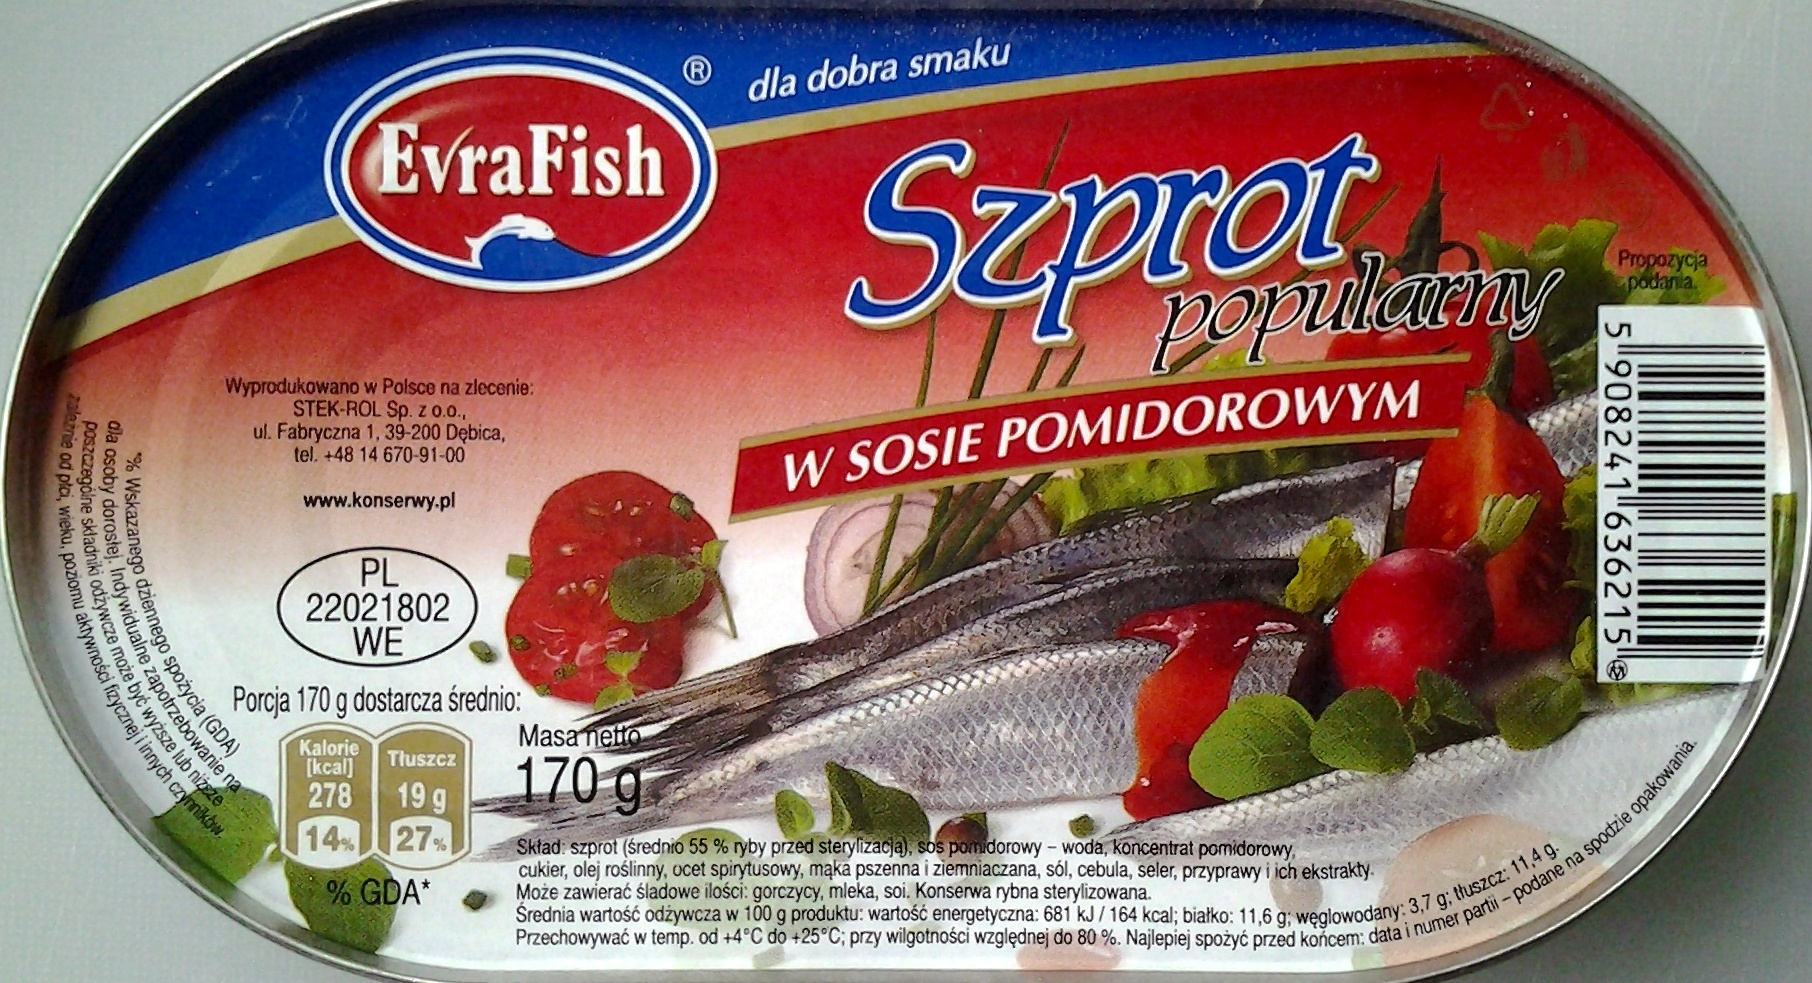 Szprot w sosie pomidorowym - Product - pl